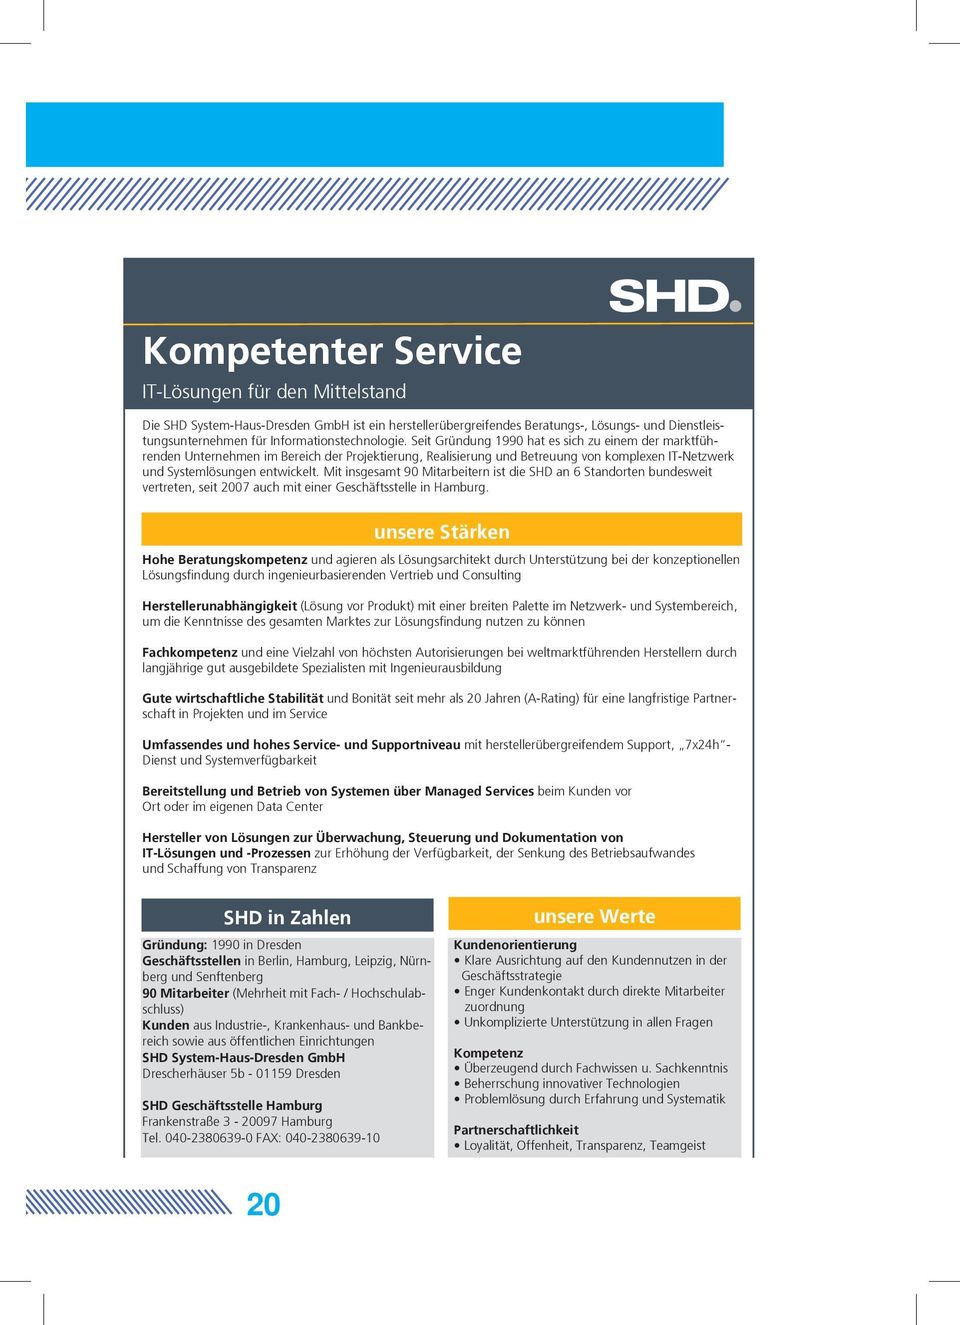 Mit insgesamt 90 Mitarbeitern ist die SHD an 6 Standorten bundesweit vertreten, seit 2007 auch mit einer Geschäftsstelle in Hamburg.